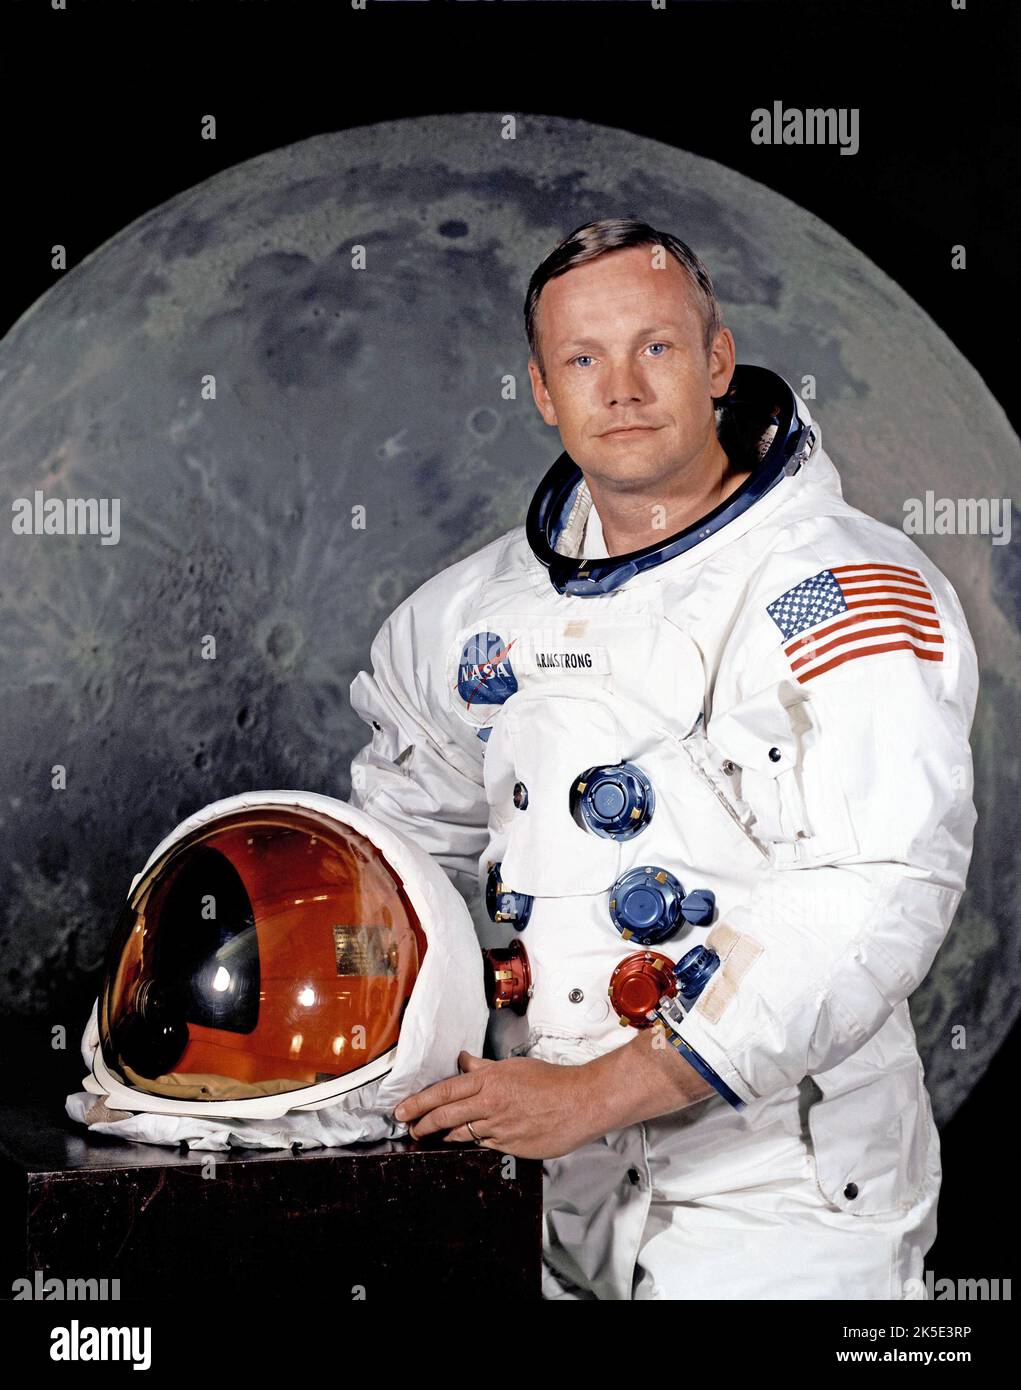 El astronauta Neil A. Armstrong (1930-2012). Armstrong fue el comandante de la misión Apolo 11 que el 20 de julio de 1969 se convirtió en el primer hombre en pisar la superficie lunar. Falleció el 25 de agosto de 2012. Imagen optimizada de la NASA: Crédito: NASA Foto de stock